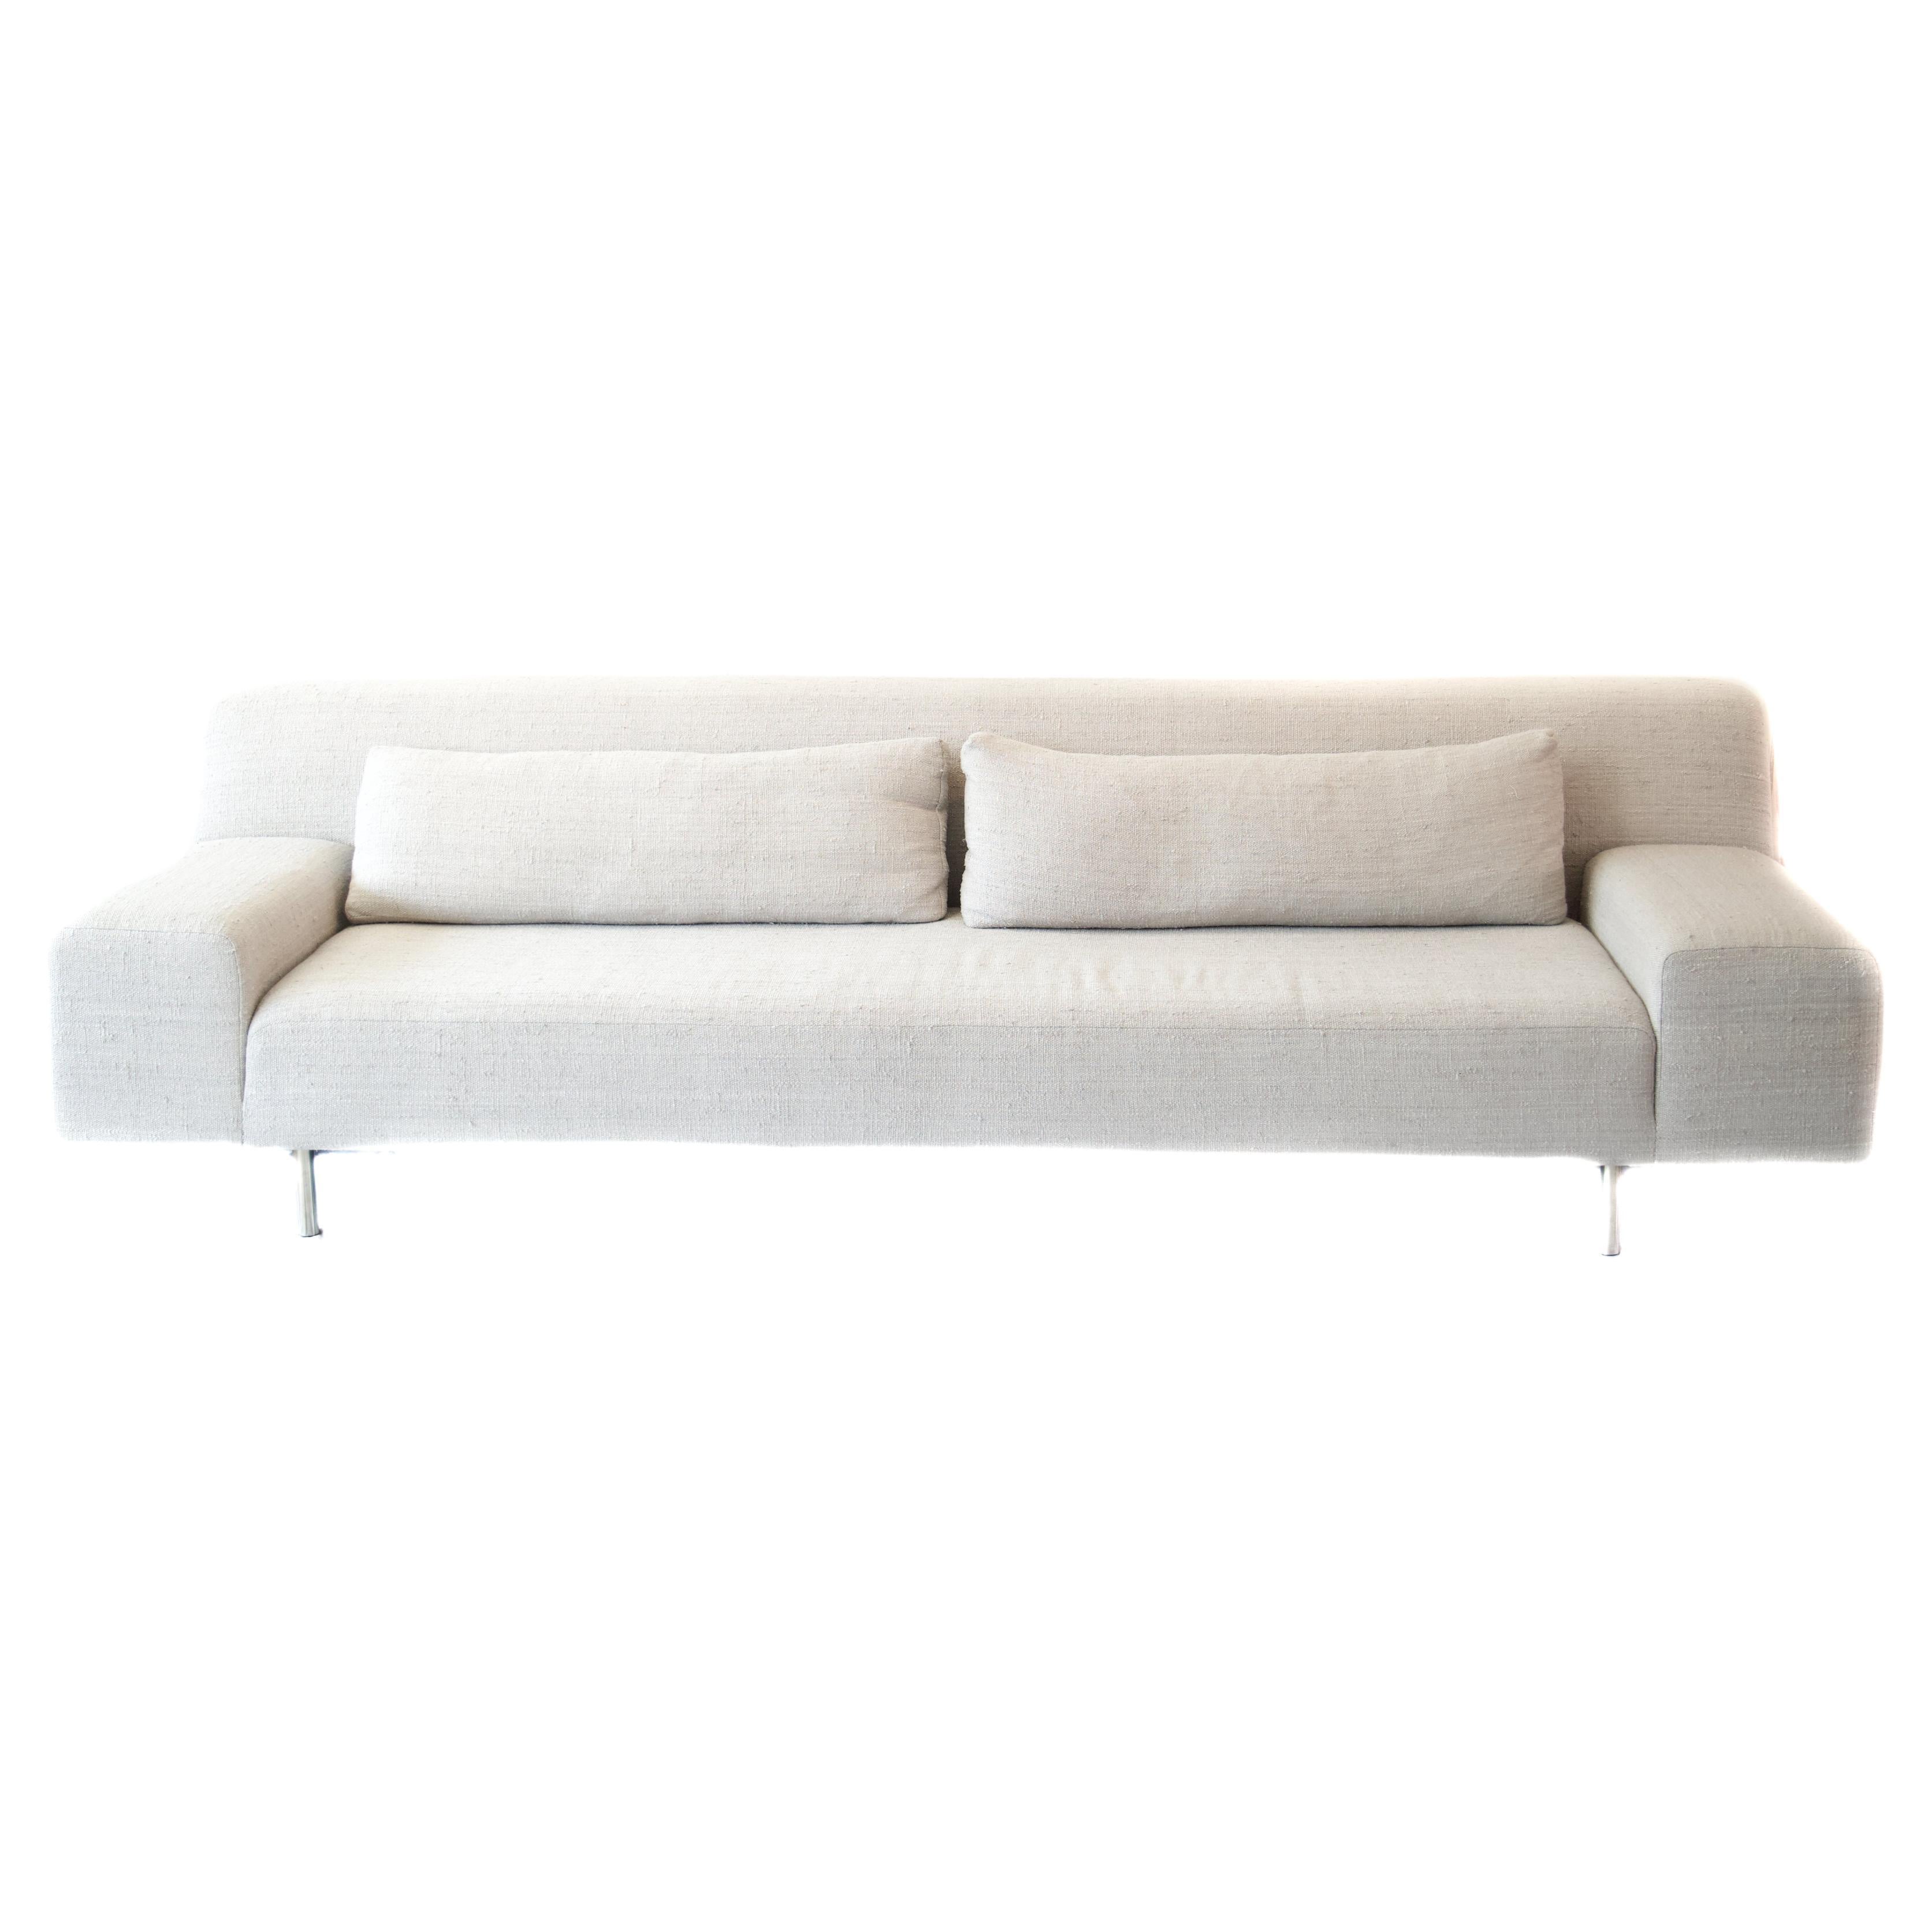 Elegant Modern Sofa Upholstered in Handwoven Dove Grey Linen/Silk on Chrome Legs For Sale